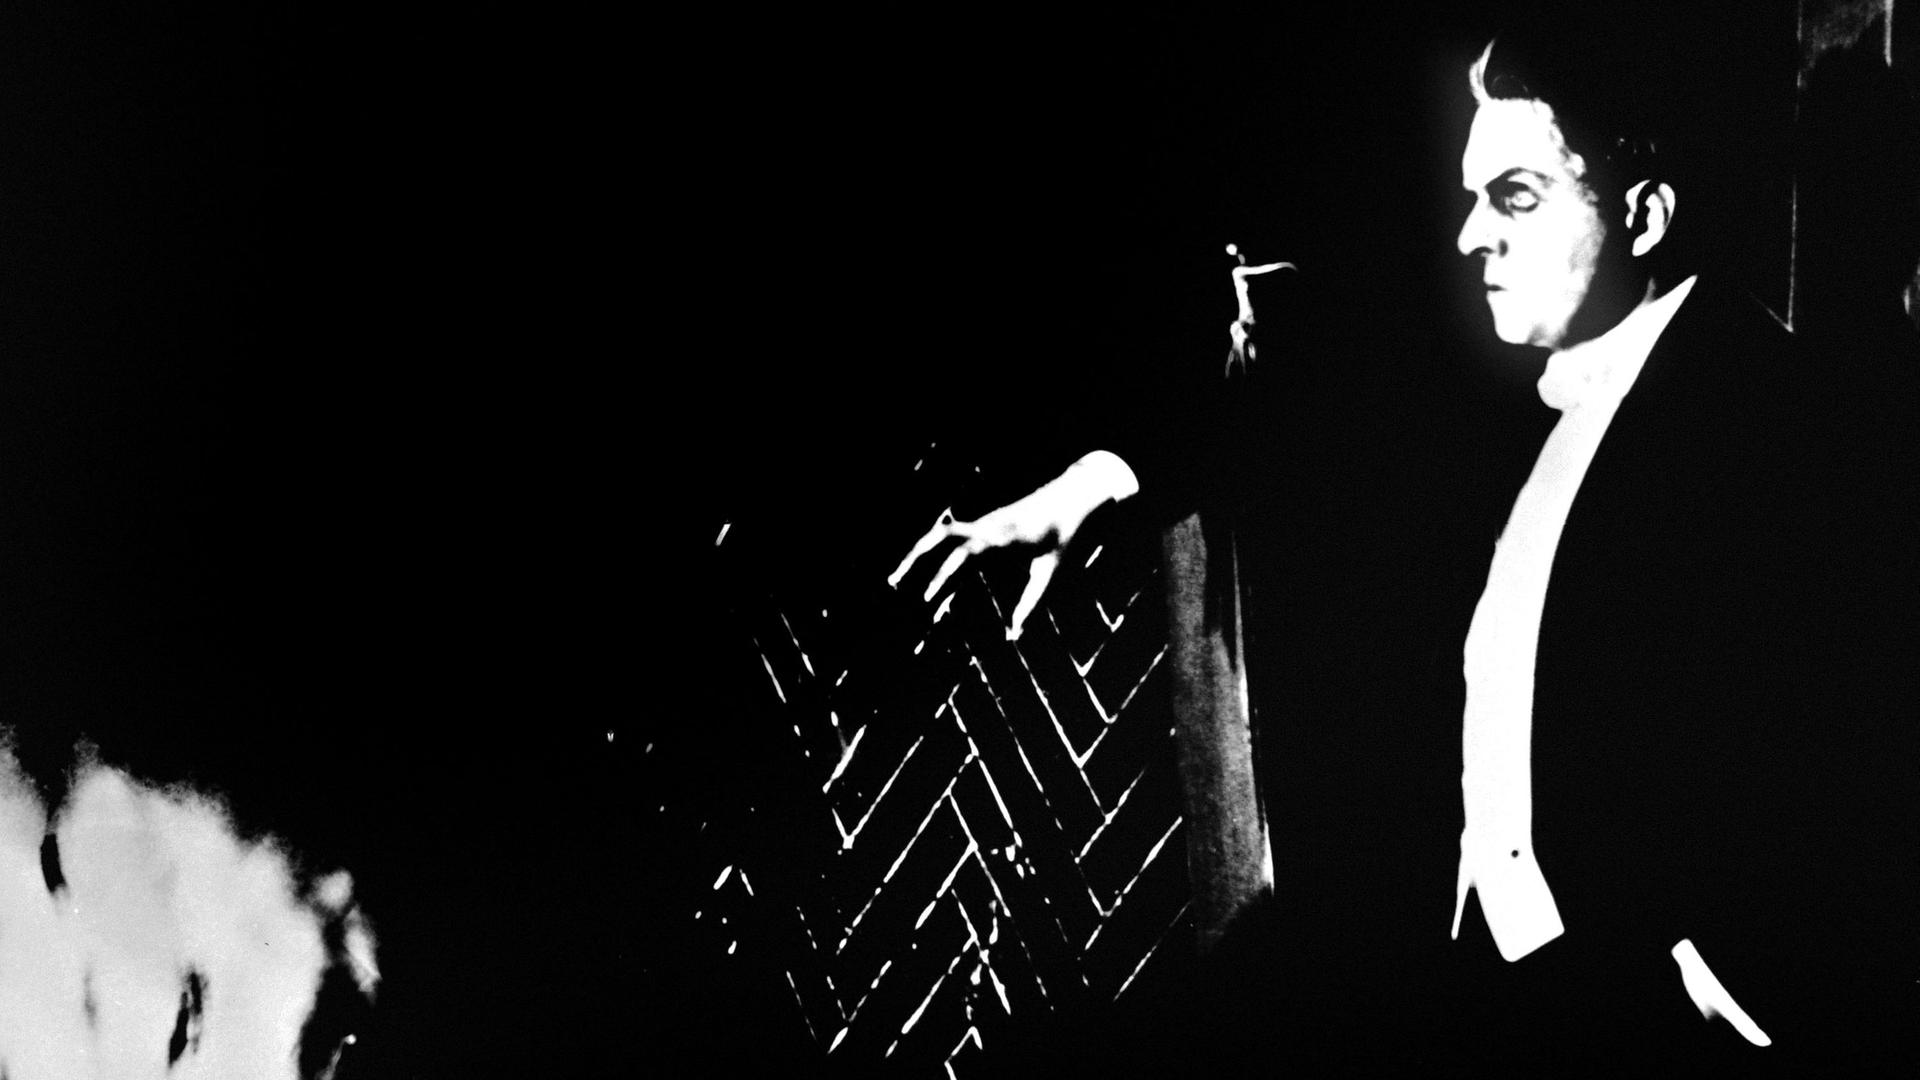 Der Schauspieler Rudolf Klein-Rogge ist in einer Szene aus Fritz Langs Stummfilm von 1922, "Dr. Mabuse, der Spieler" von der Seite zu sehen, um ihn herum ist es dunkel. Er macht einen düsteren Eindruck.

